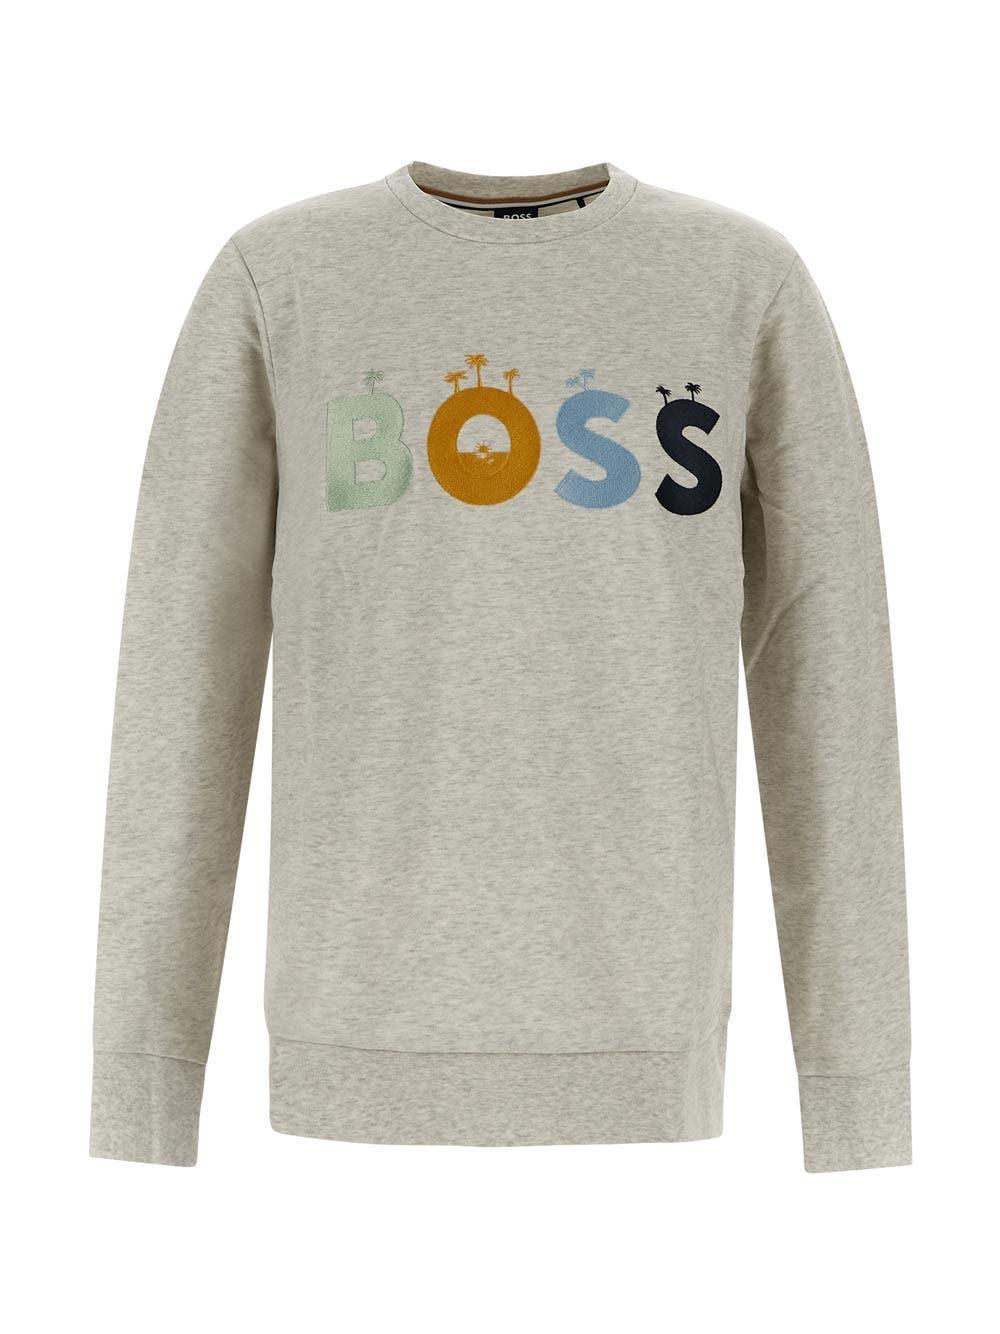 BOSS by HUGO BOSS Grey Sweatshirt in Gray for Men | Lyst